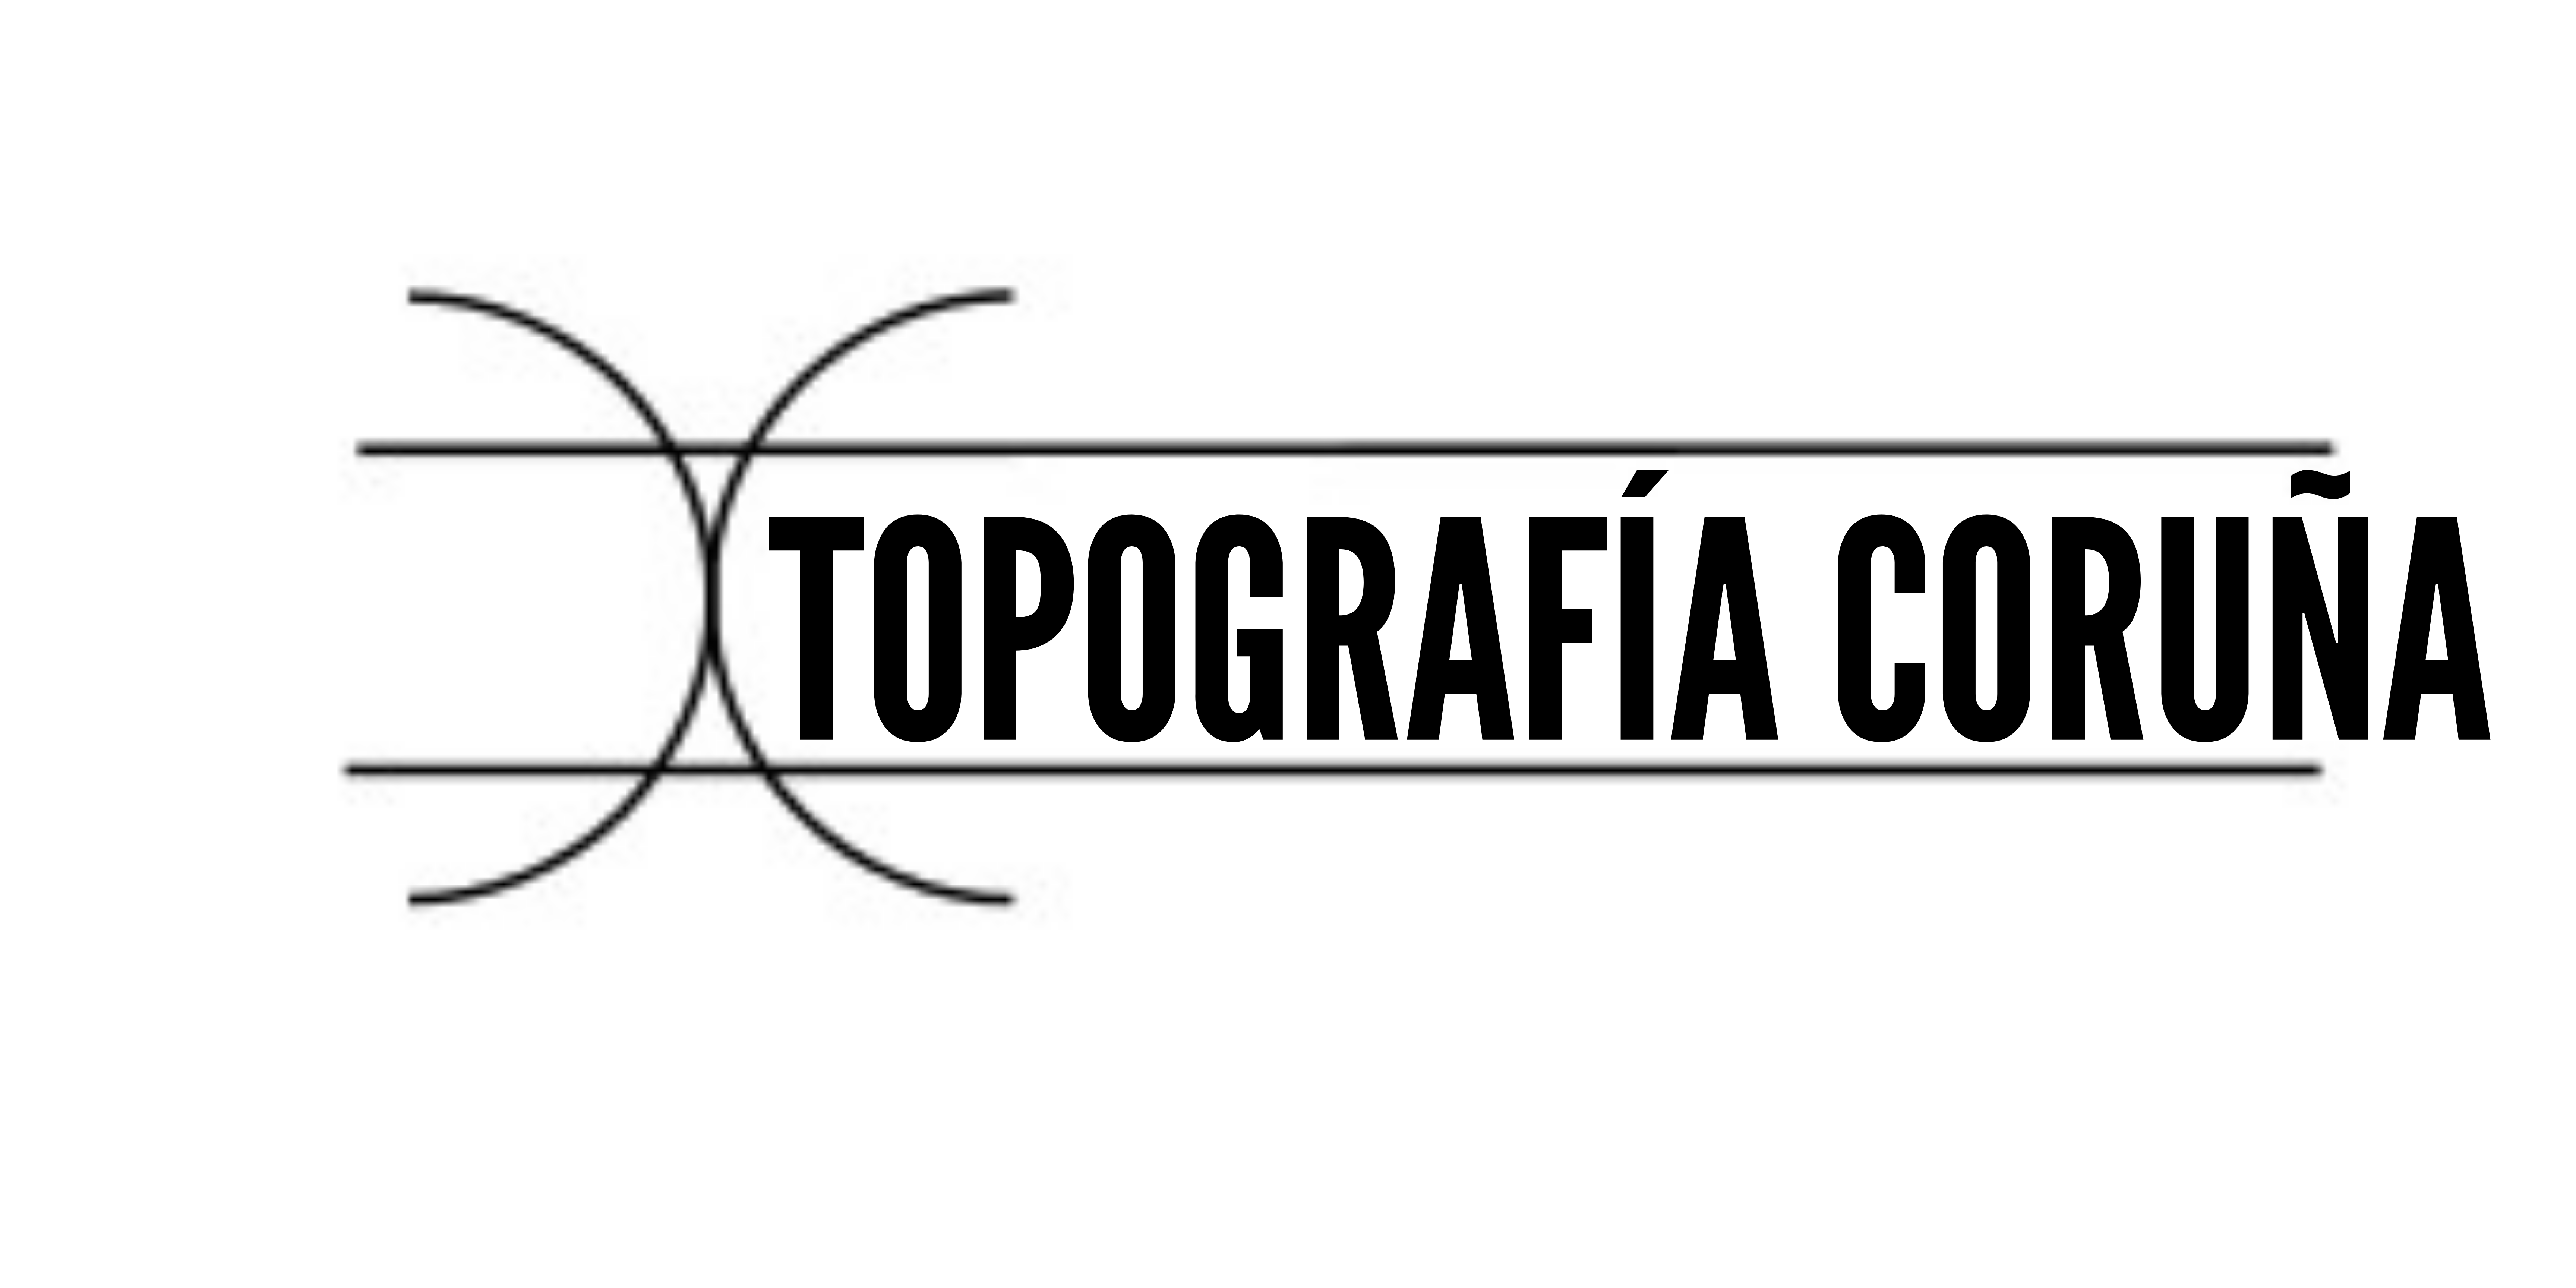 Topografía Coruña